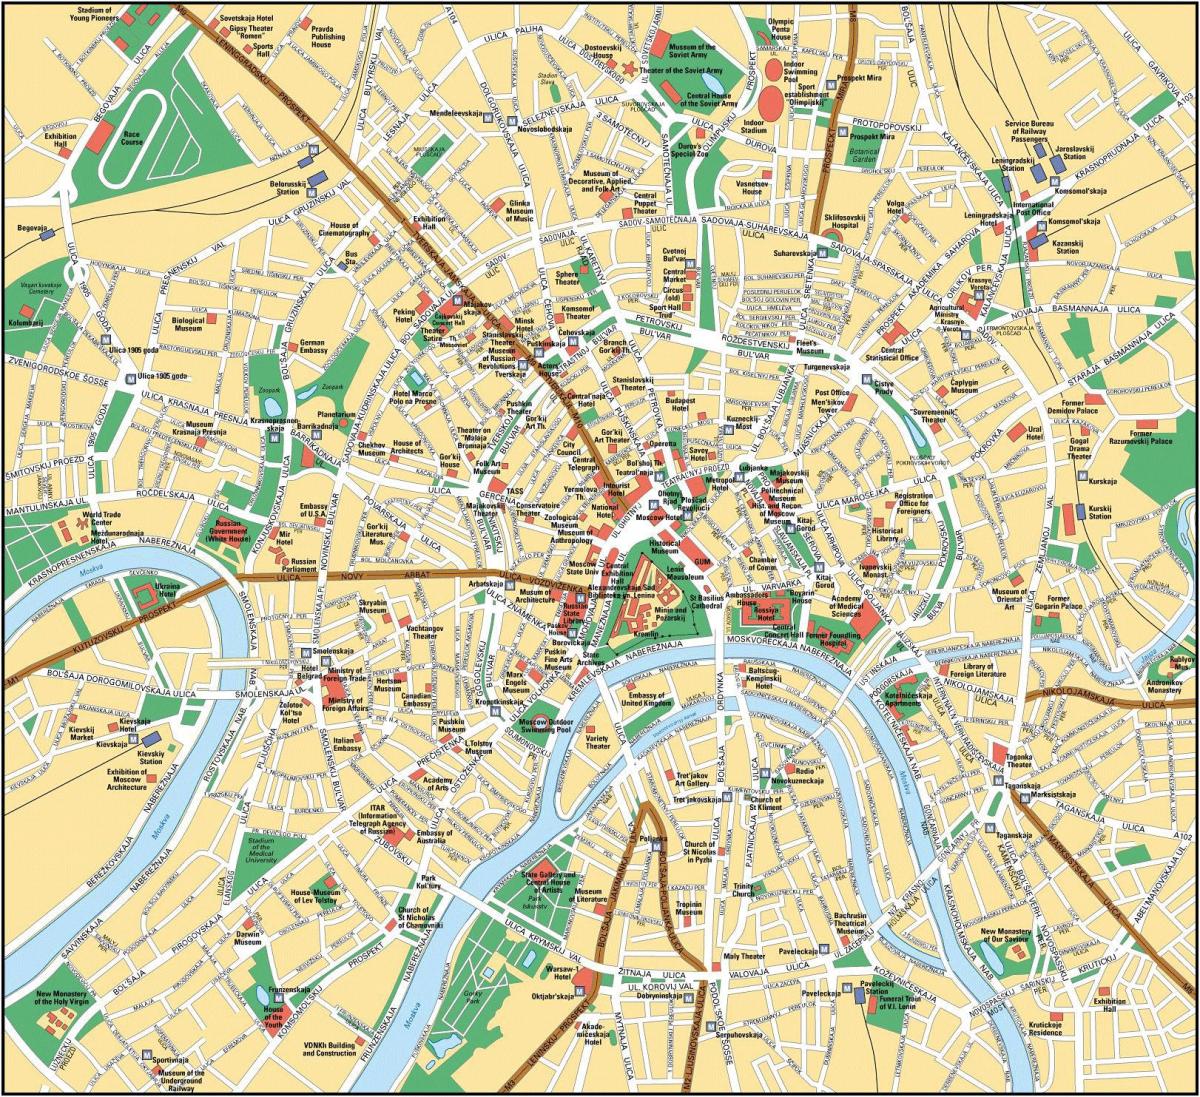 Moskwa city-map